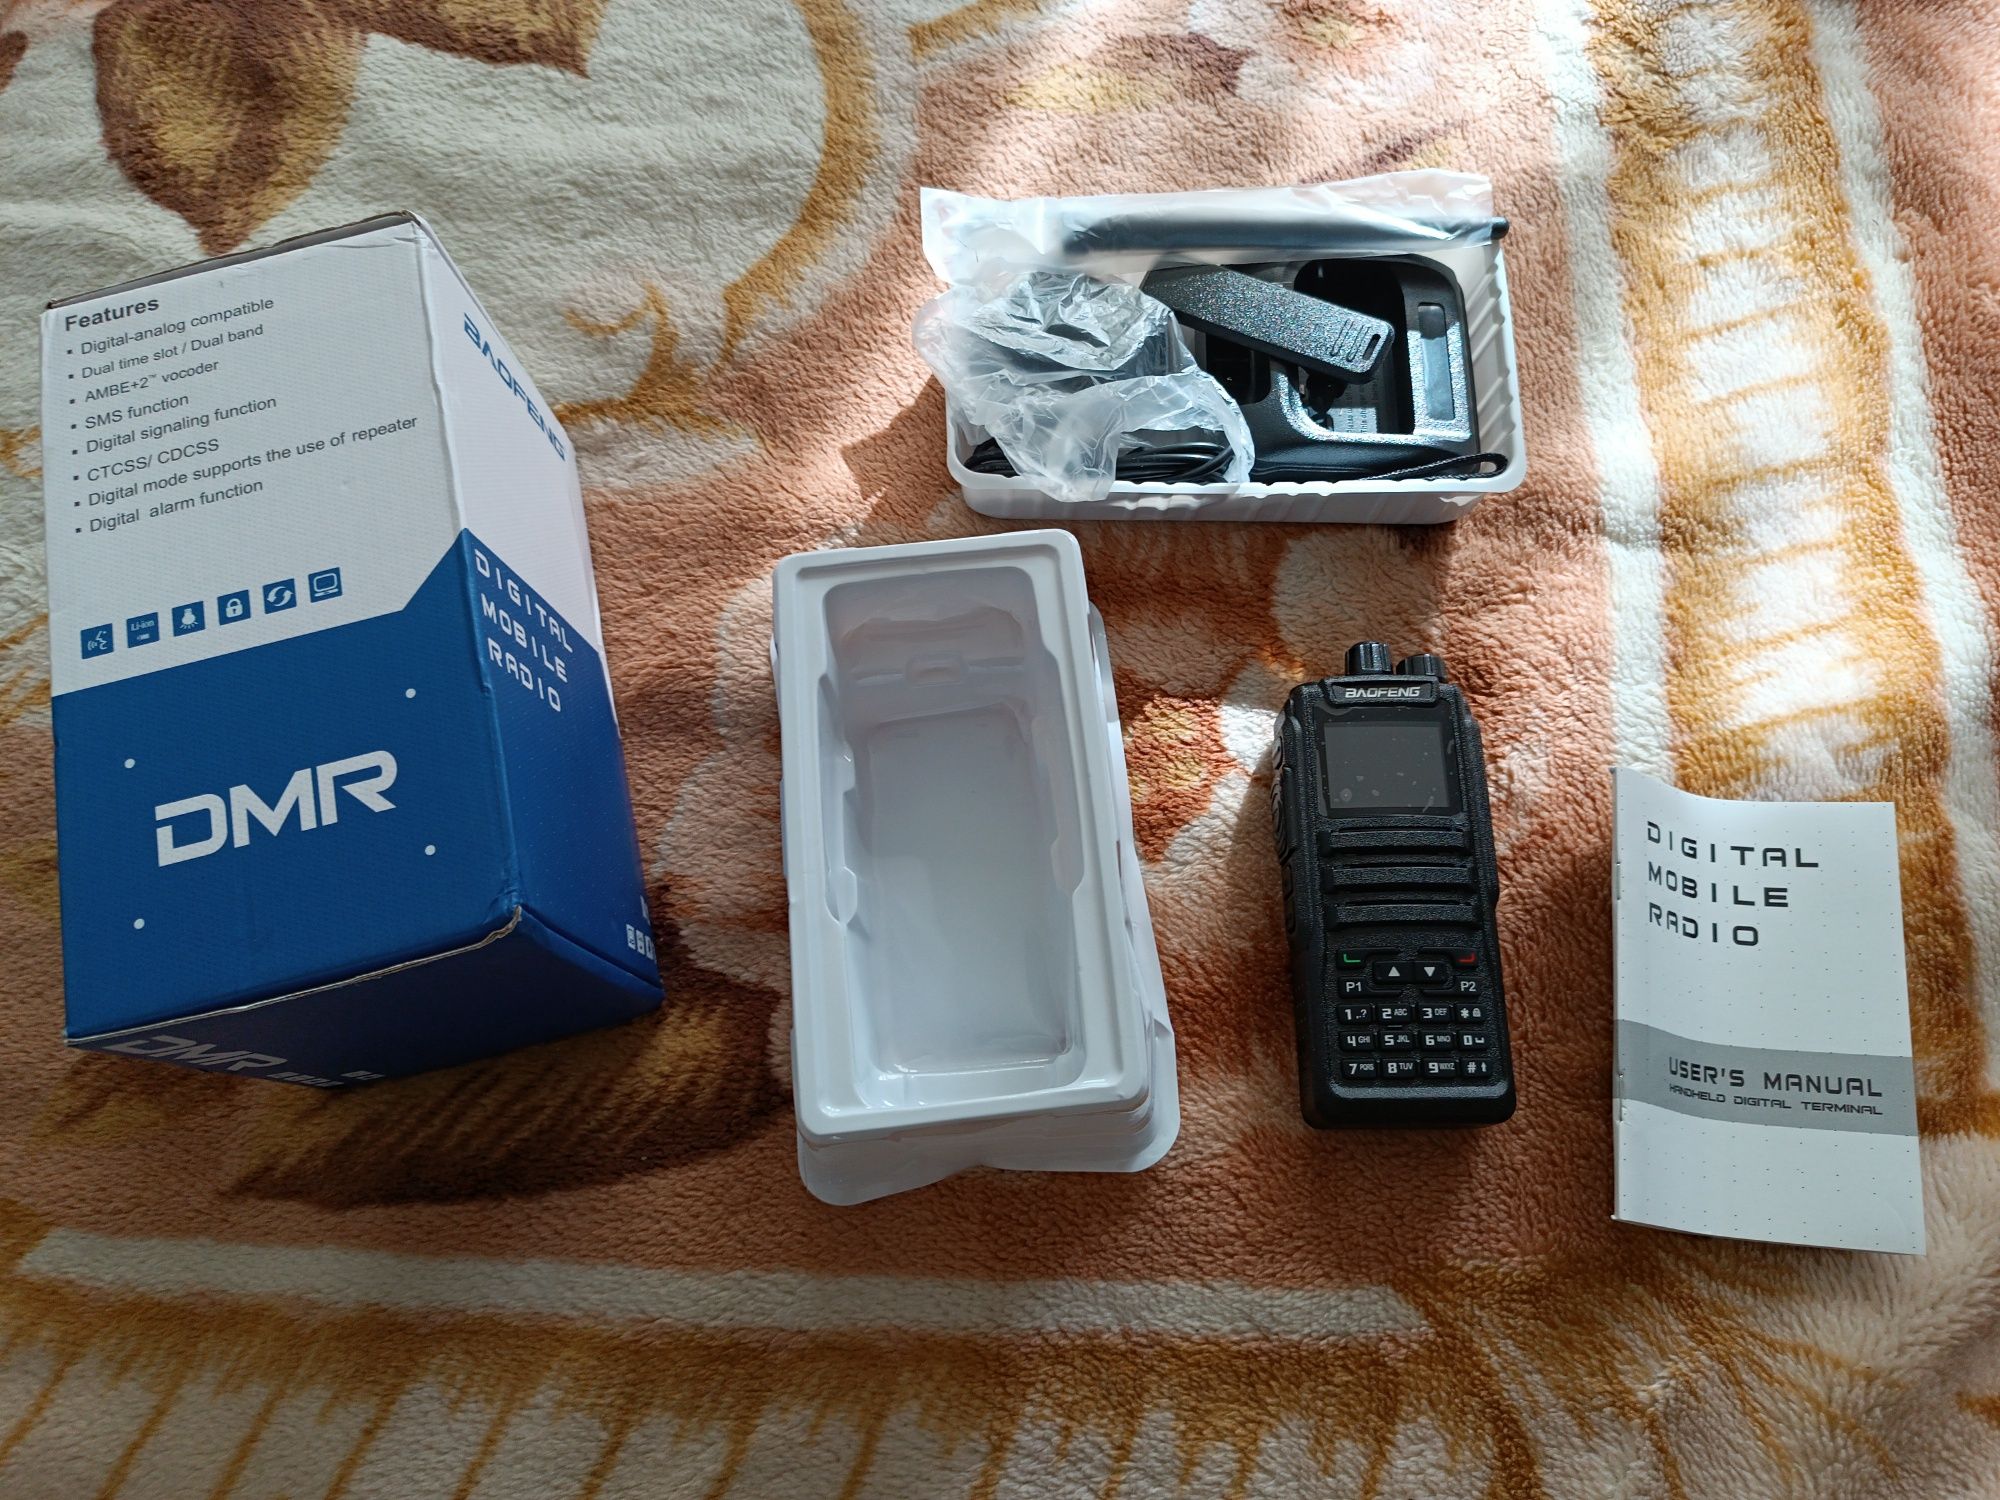 Radiotelefon analogowo-cyfrowy Baofeng DM-1701 2m/70cm. OpenGD77